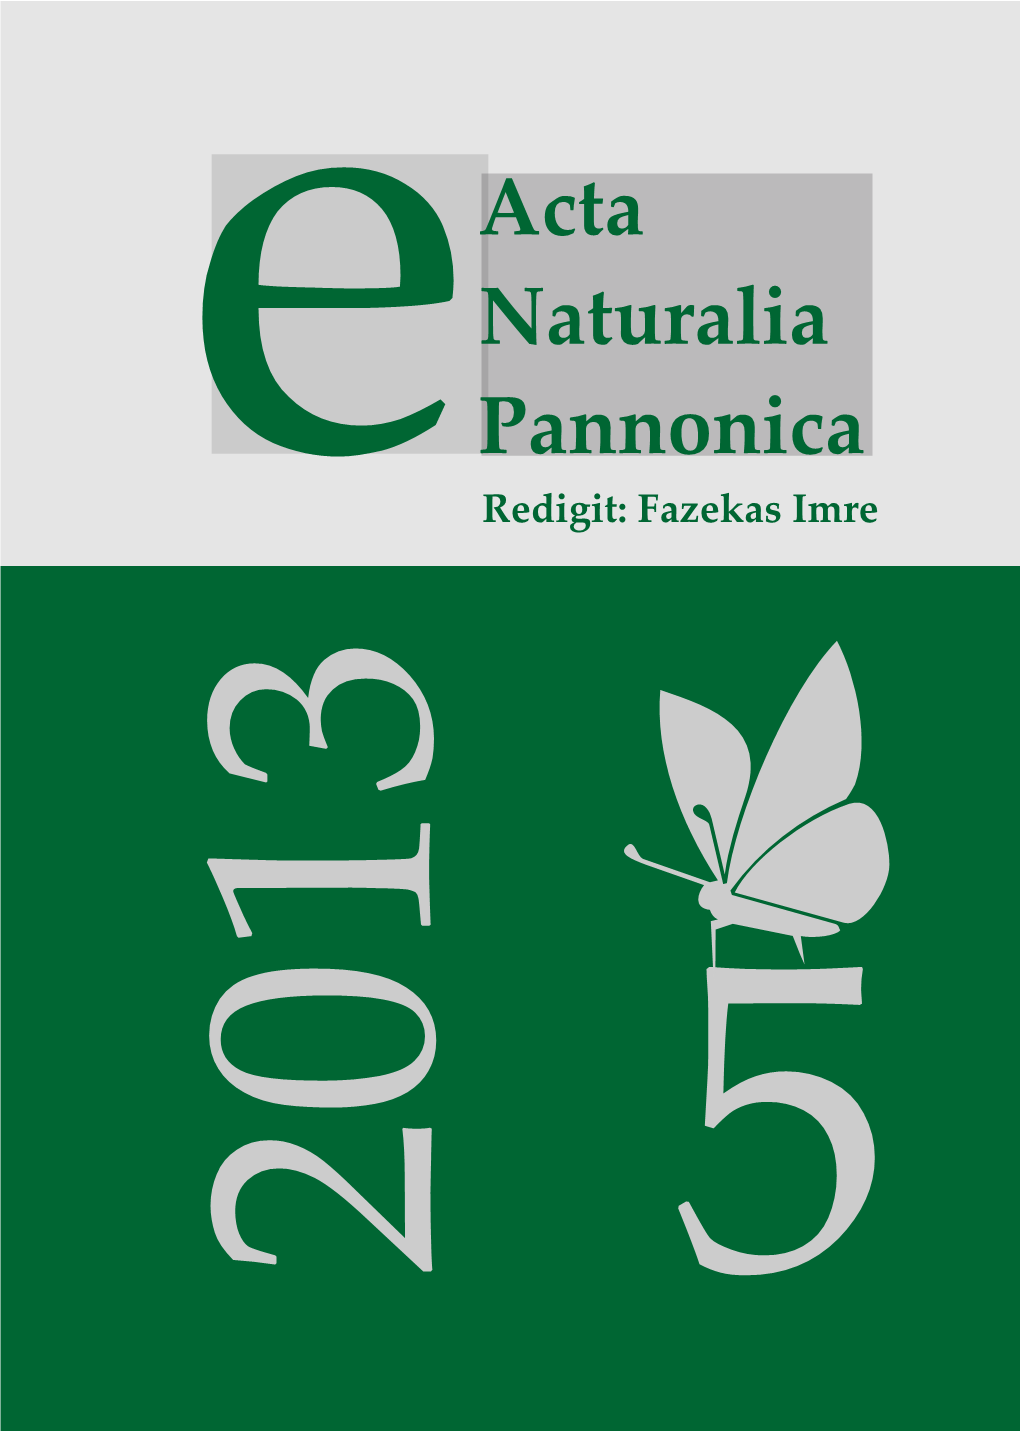 E-Acta Natzralia Pannonica